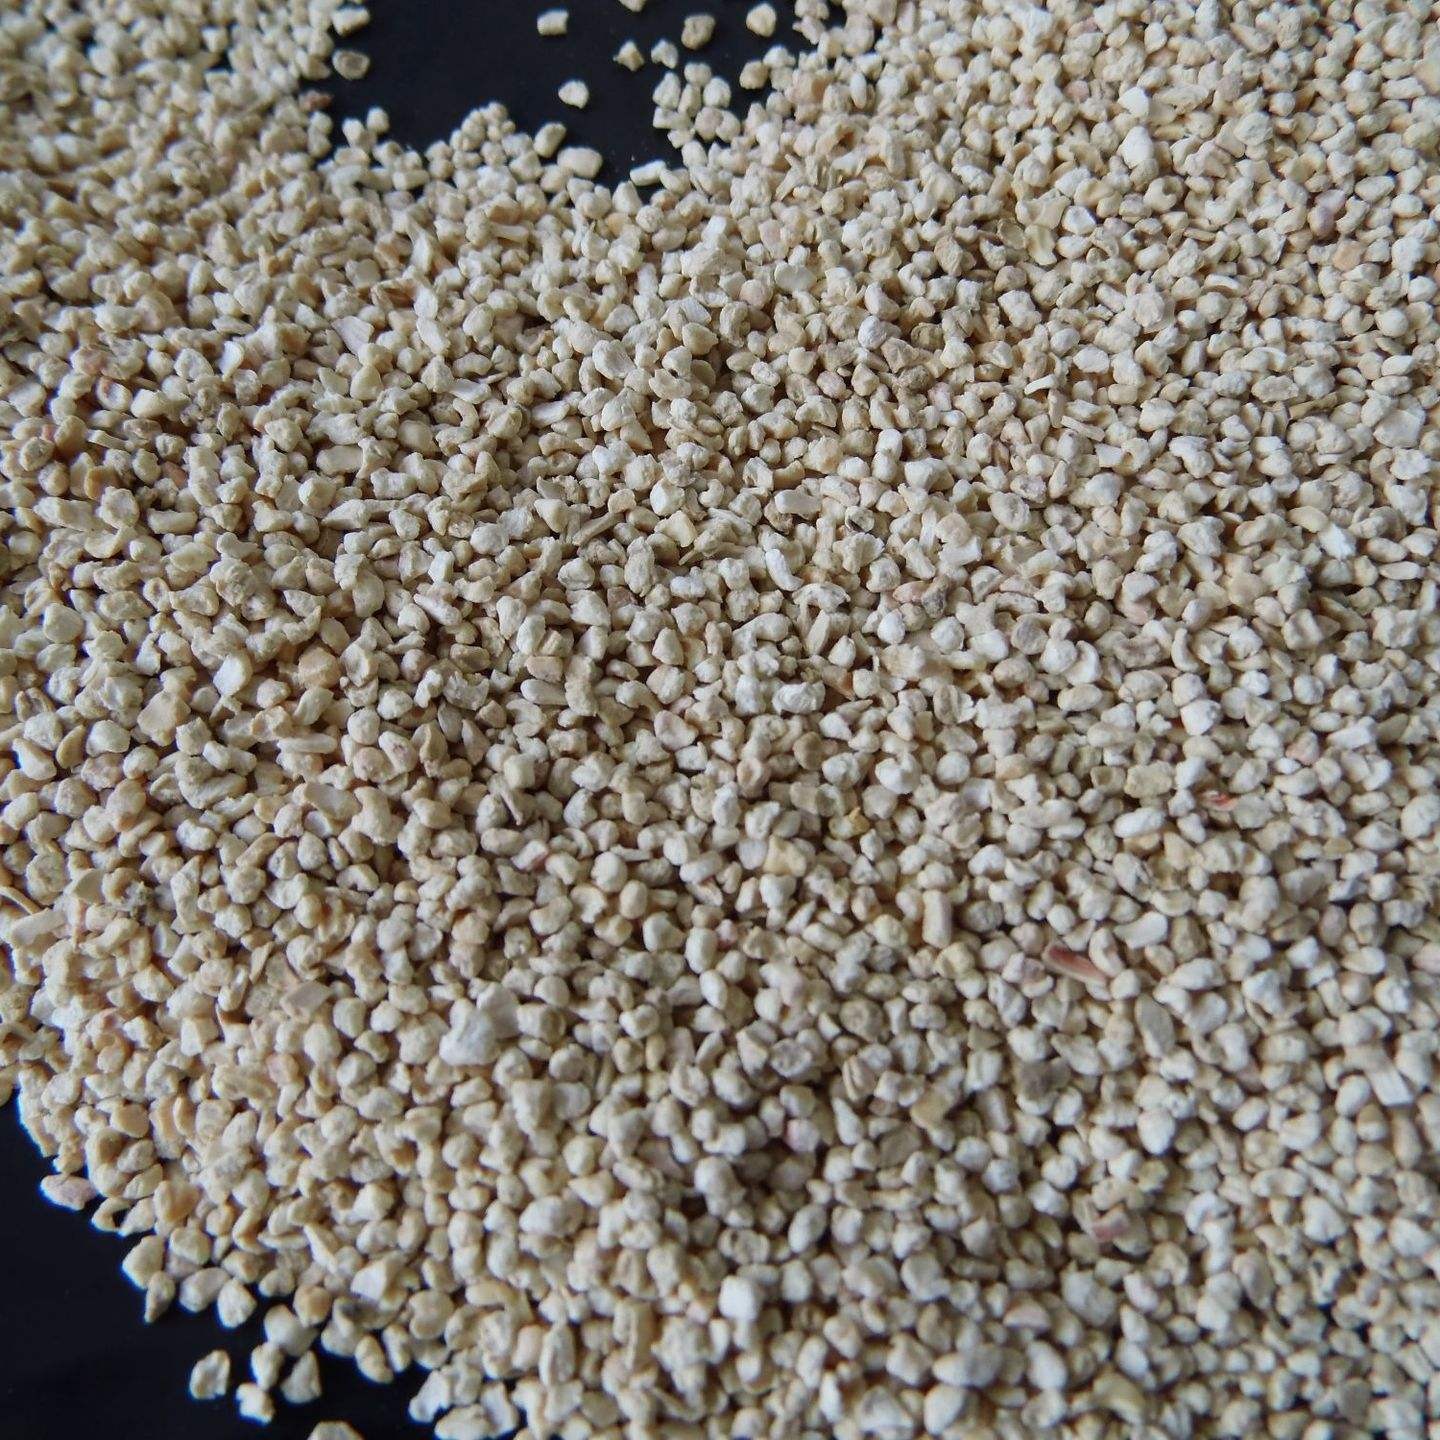 衡阳玉米芯磨料用途 干燥设备用优质玉米芯磨料低价销售价格 坚固耐用玉米芯磨料